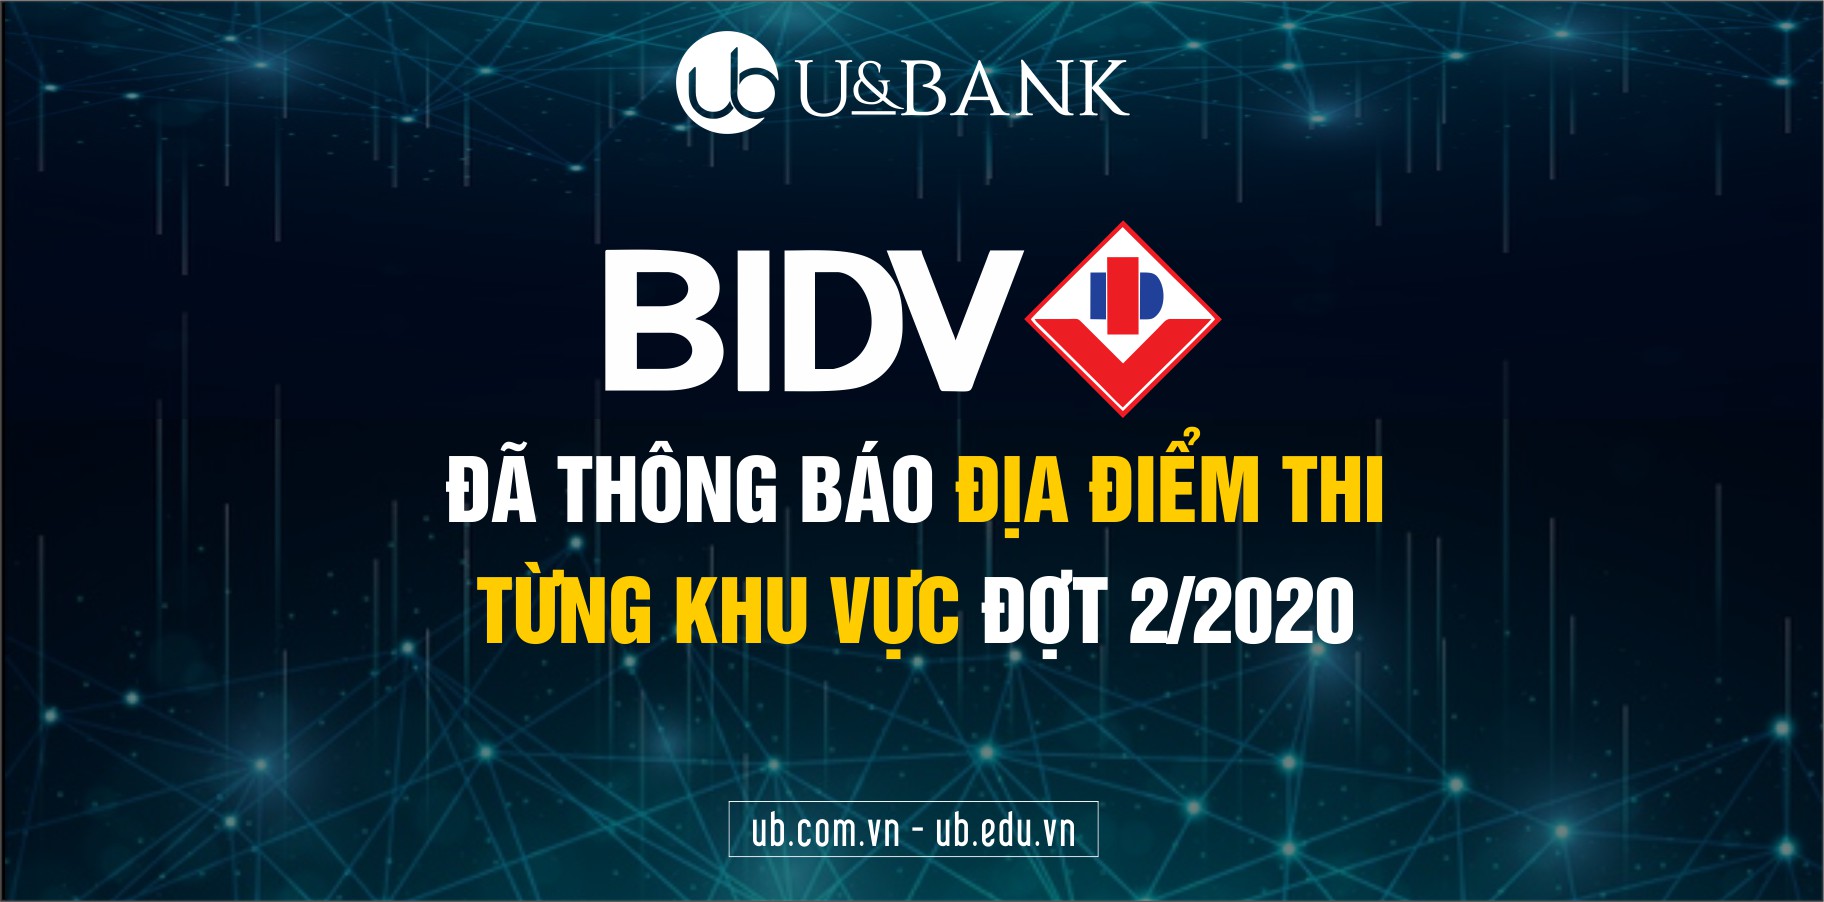 ub.com.vn BIDV thông báo thi.jpg